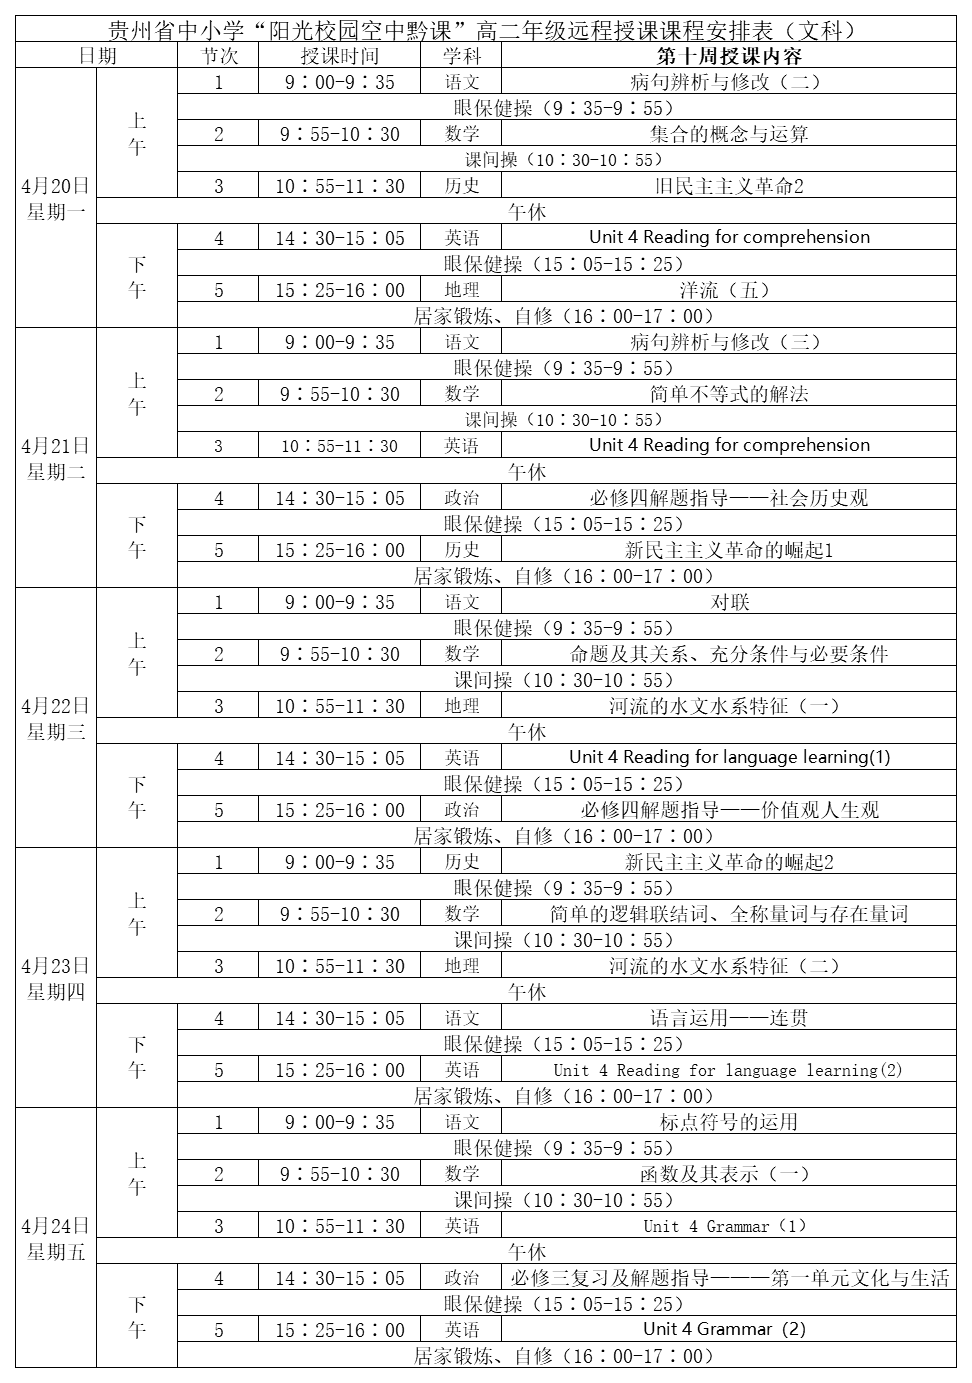 贵州中小学“空中课堂”课程表完整版公布（4月20日5